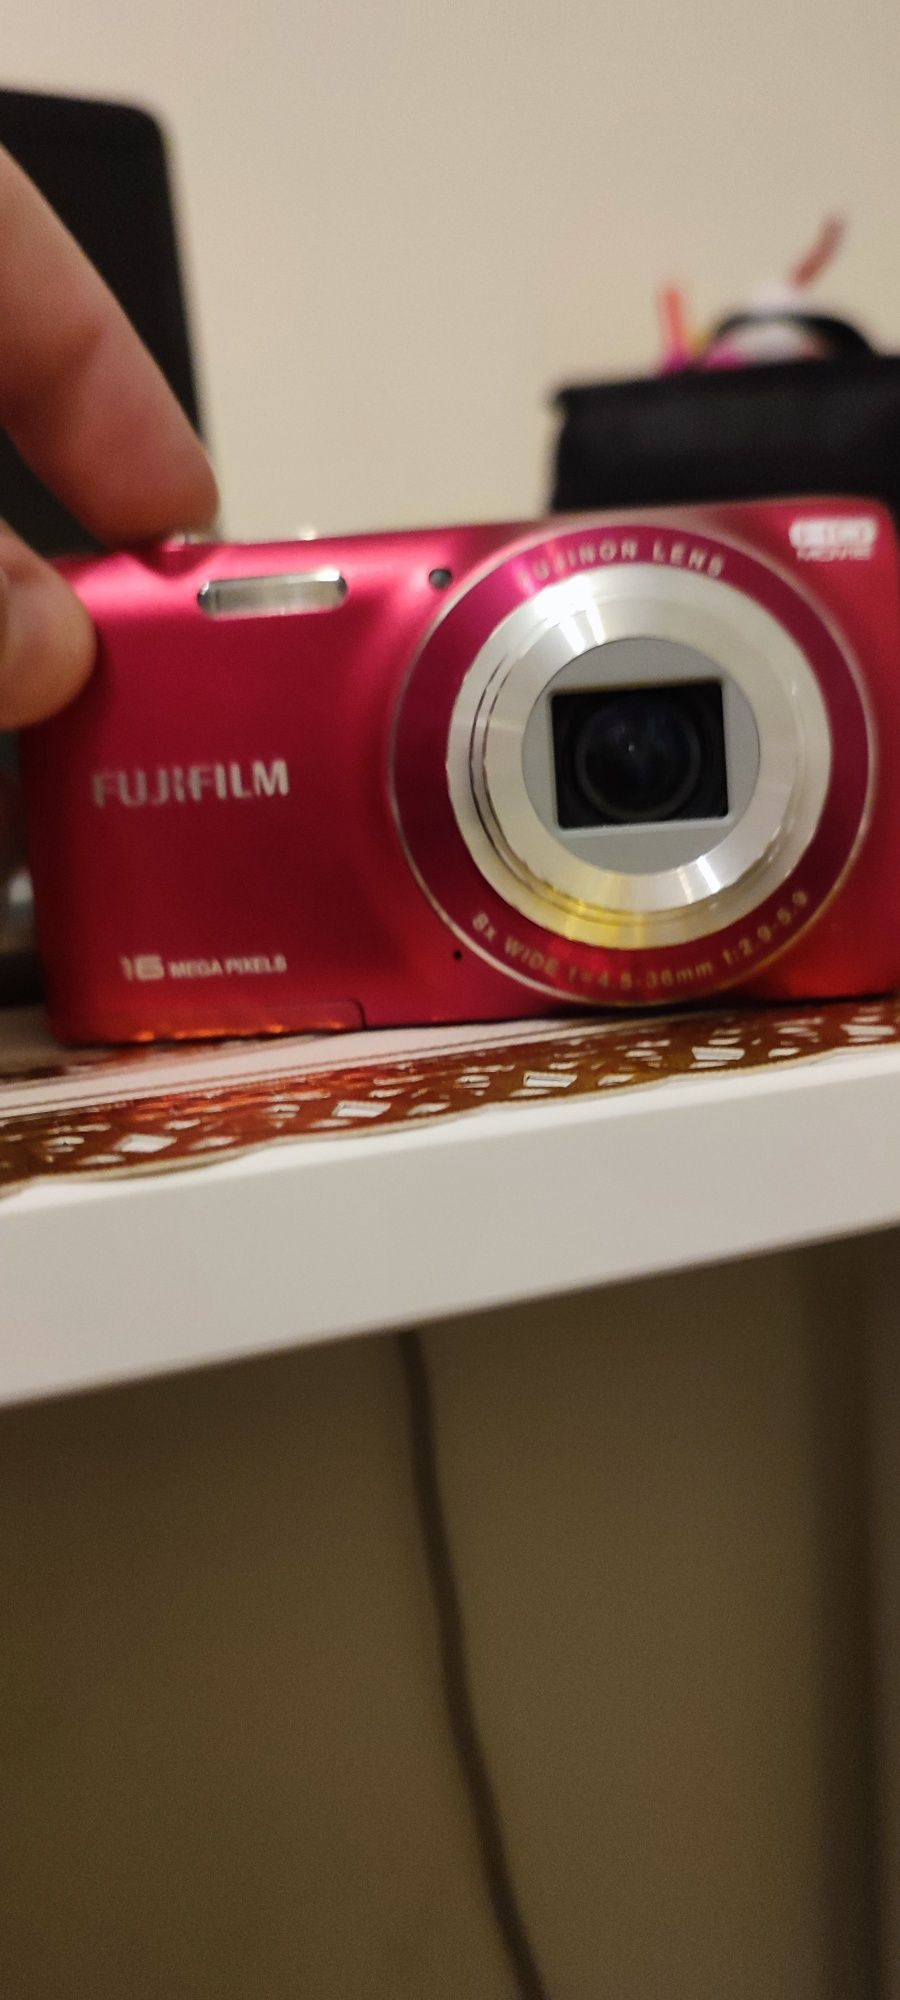 Vând aparat foto retro Fujifilm 16 megapixeli